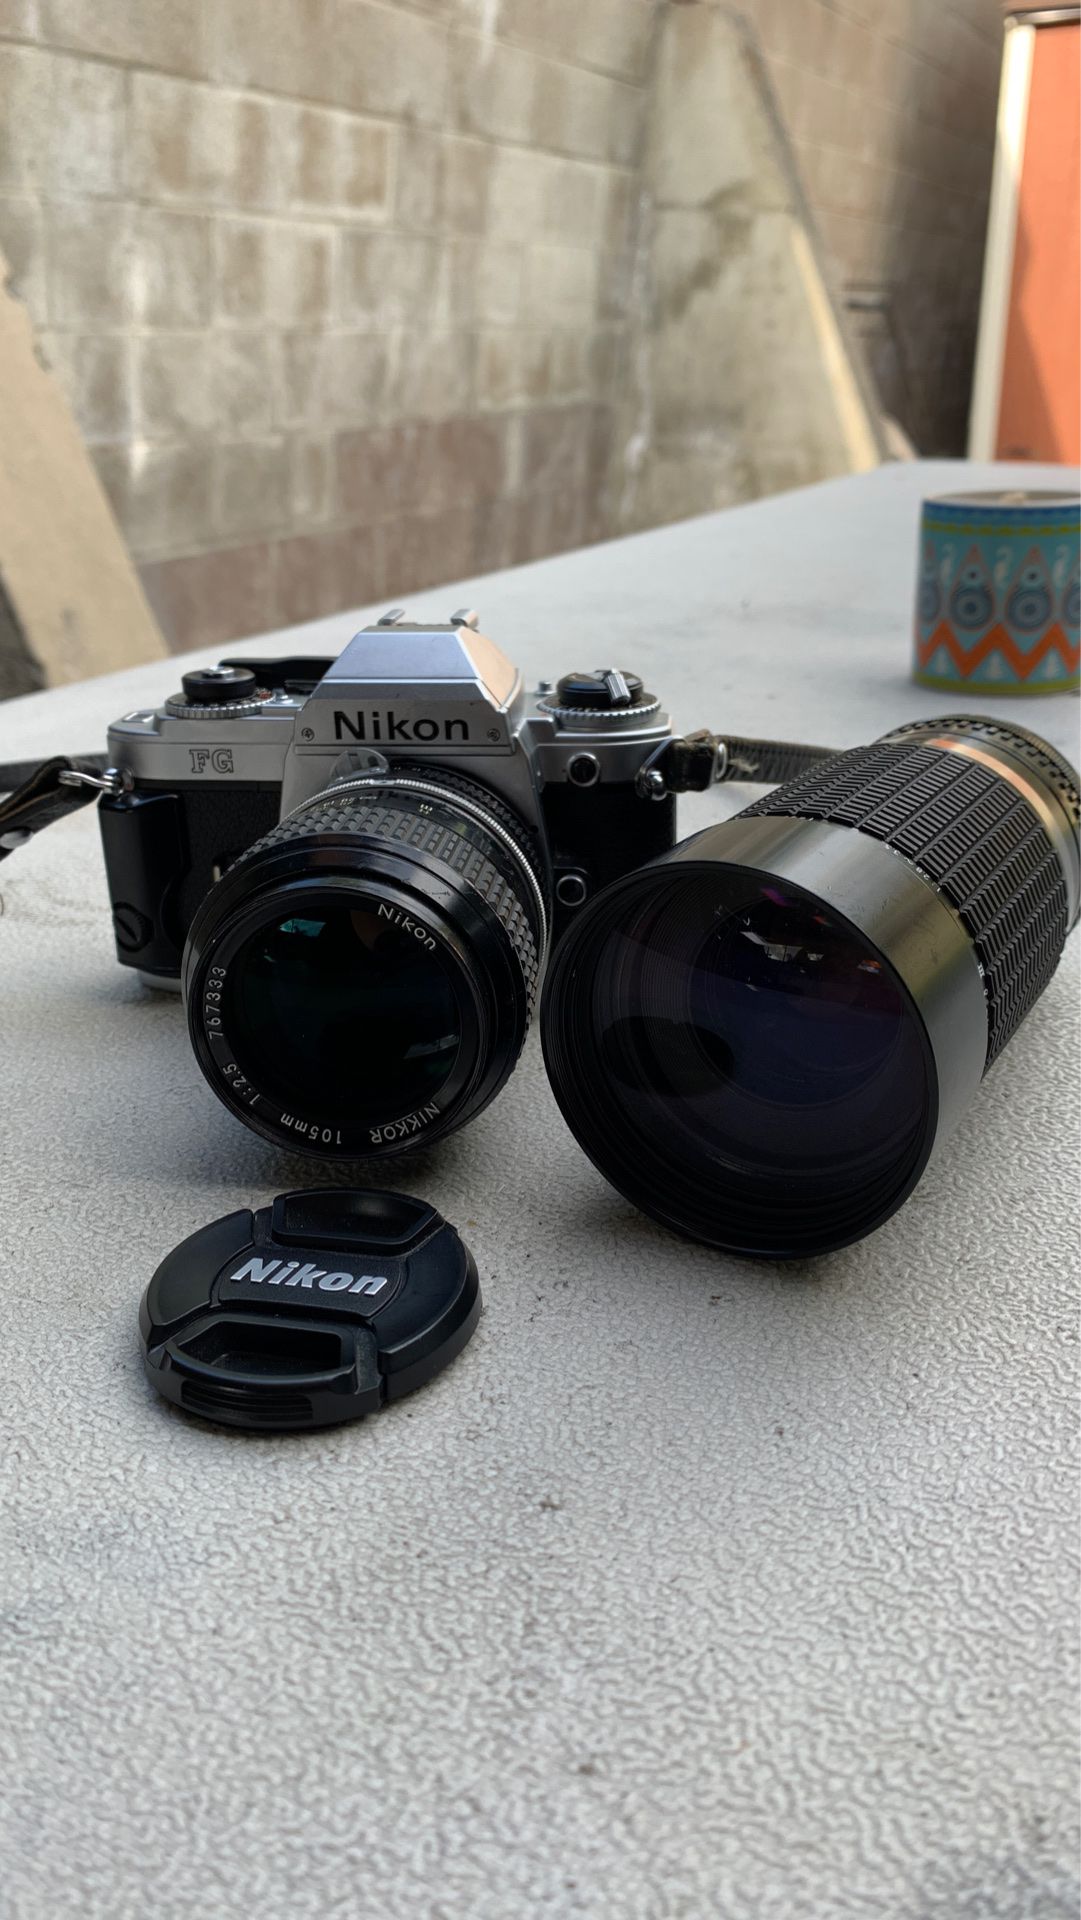 Nikon FG 35mm SLR camera with 2 lenses and camera bag